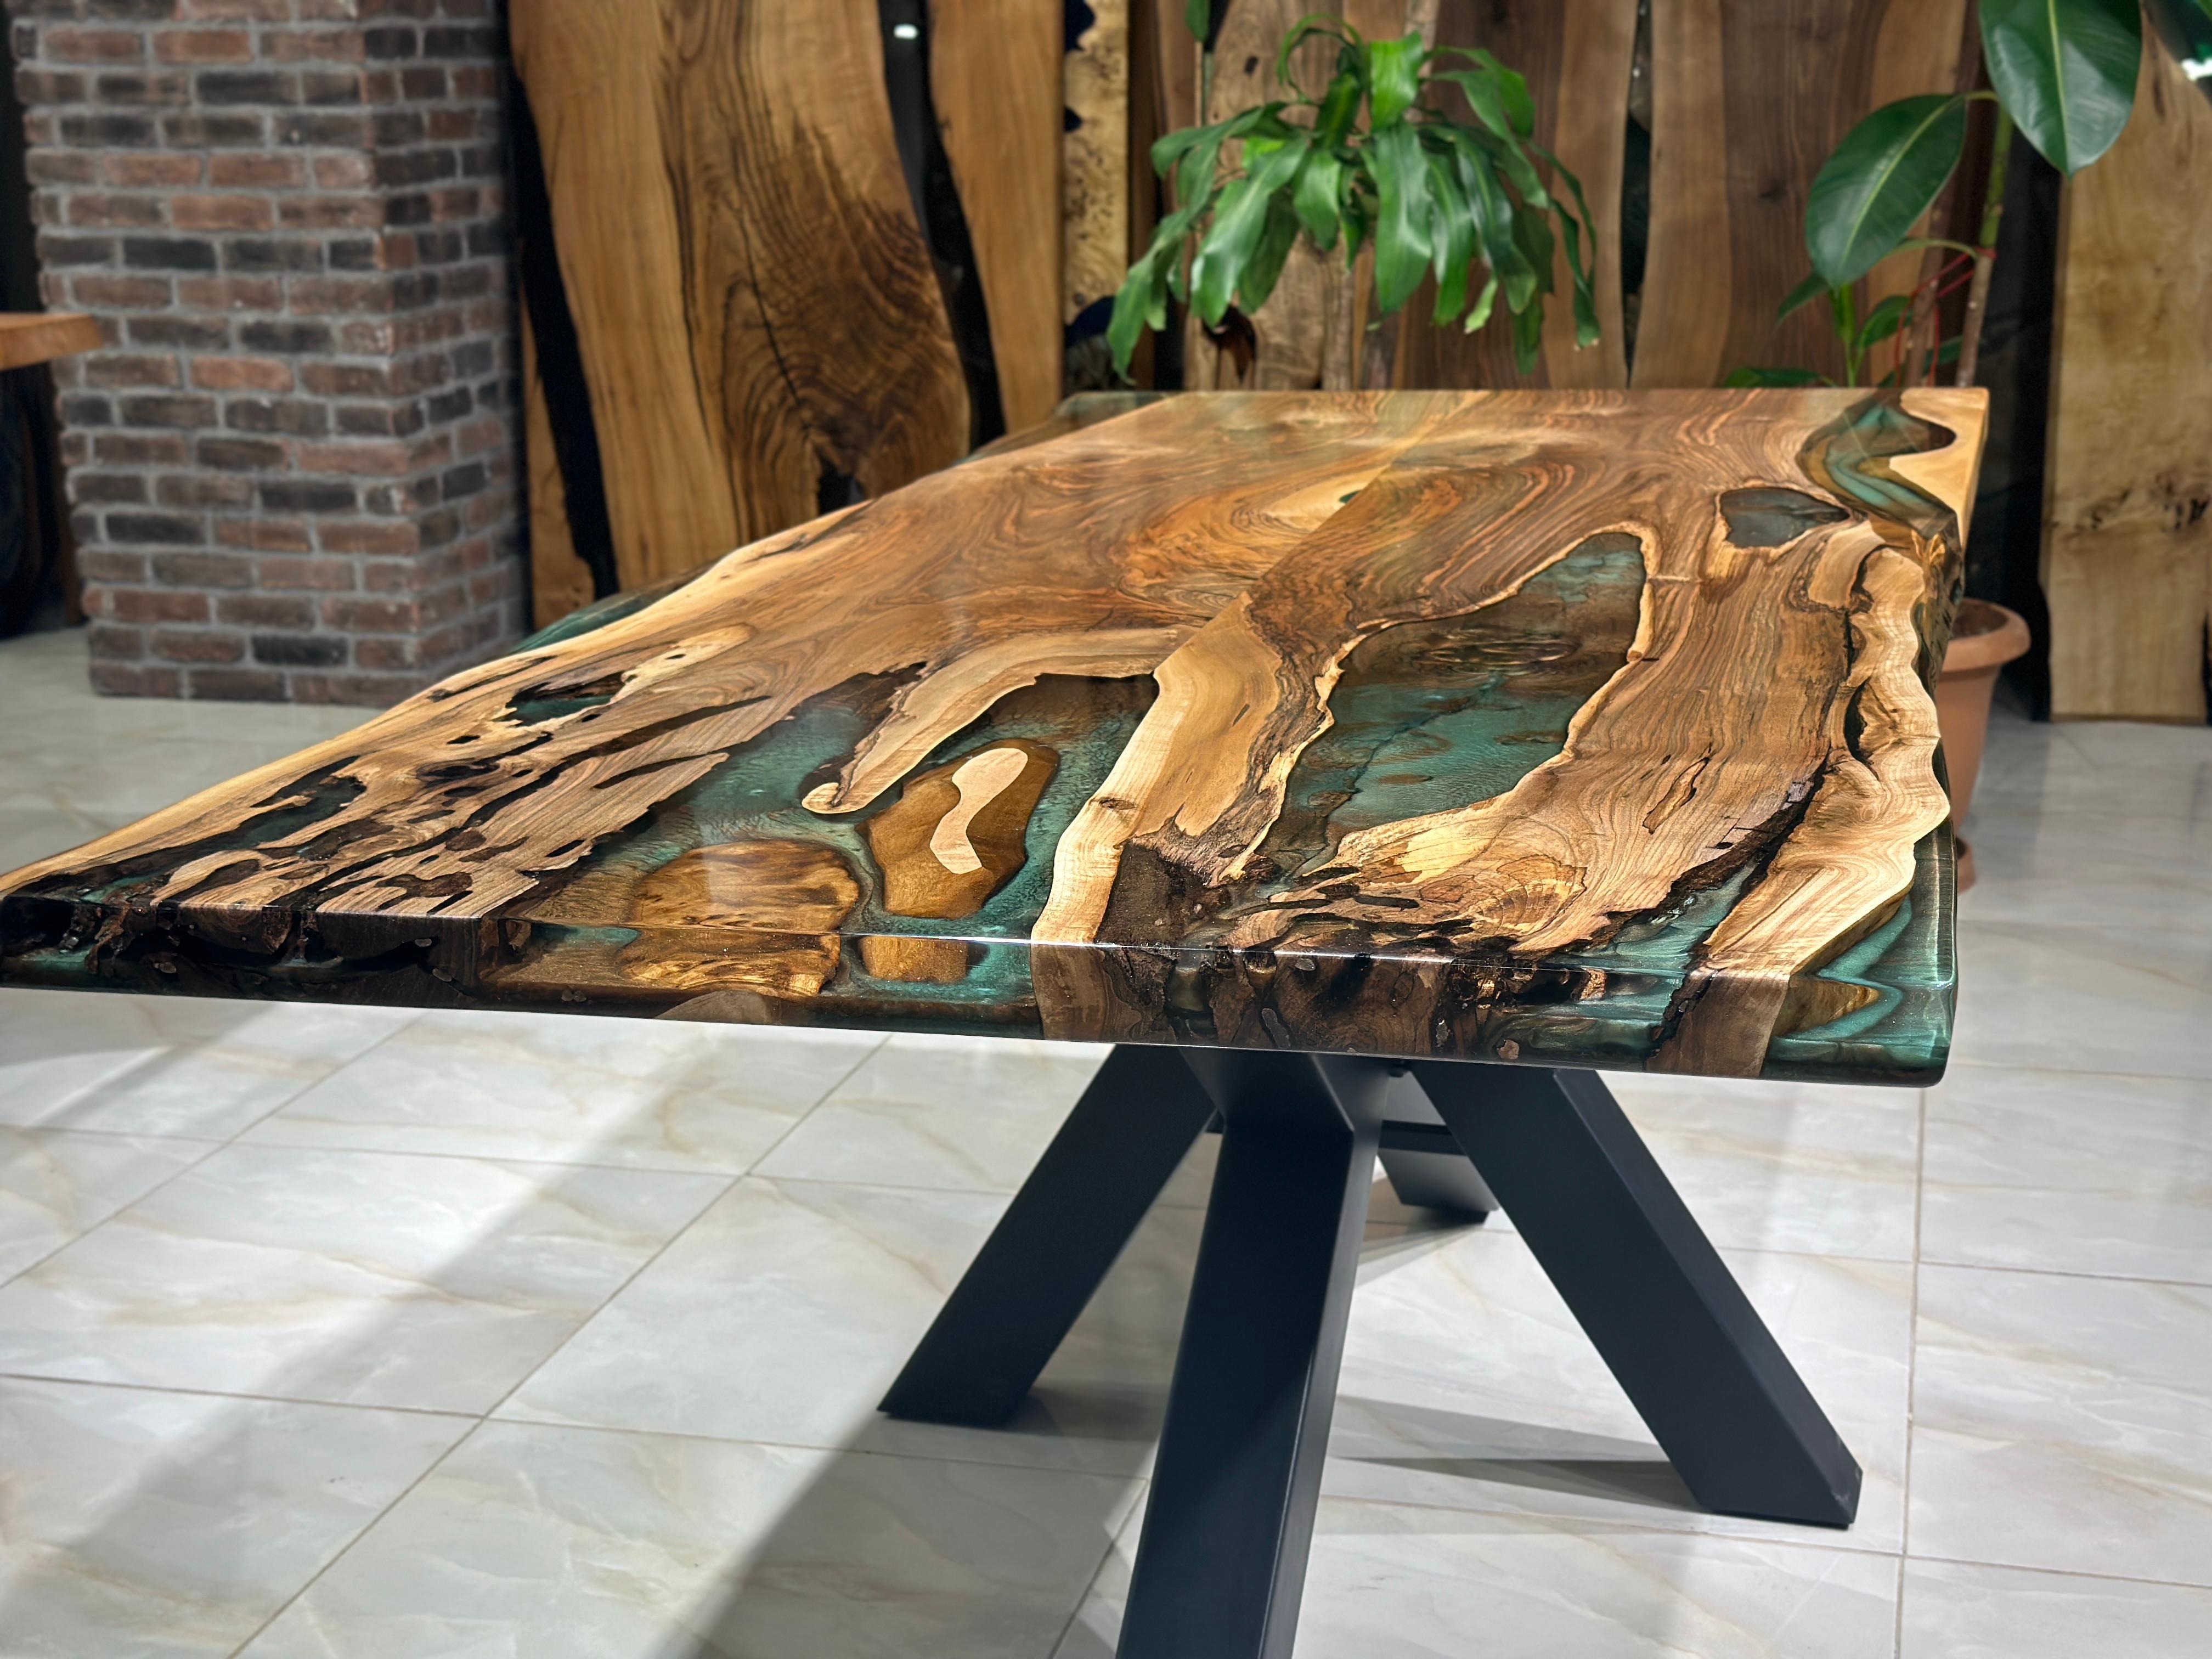 TABLE DE SALLE À MANGER EN RÉSINE ÉPOXY VERT NOYER - BRUN

Cette table en époxy émerge comme une œuvre d'art unique, inspirée par la beauté de la nature. 

La table en époxy se distingue non seulement par son design mais aussi par sa durabilité.